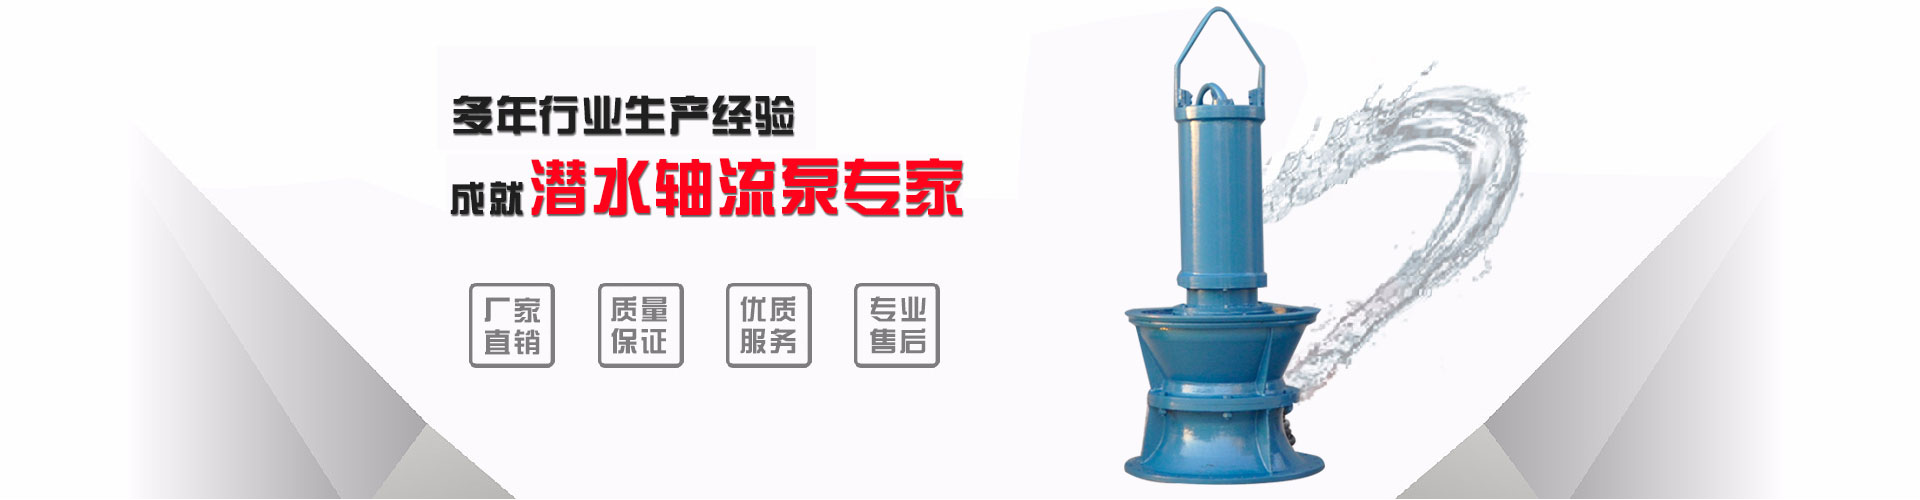 低压浮筒泵水体整治_三明浮筒泵